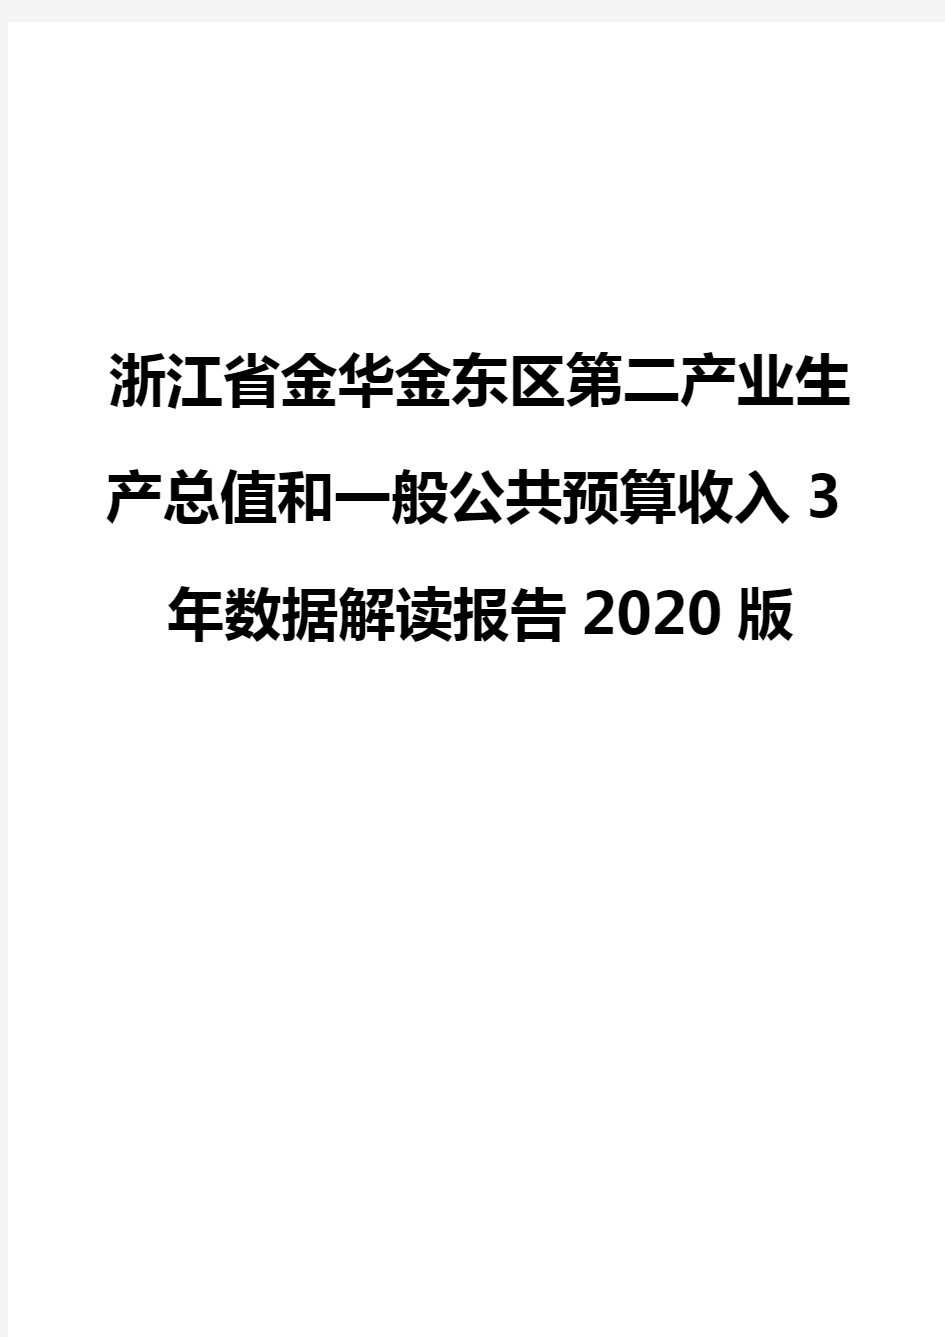 浙江省金华金东区第二产业生产总值和一般公共预算收入3年数据解读报告2020版